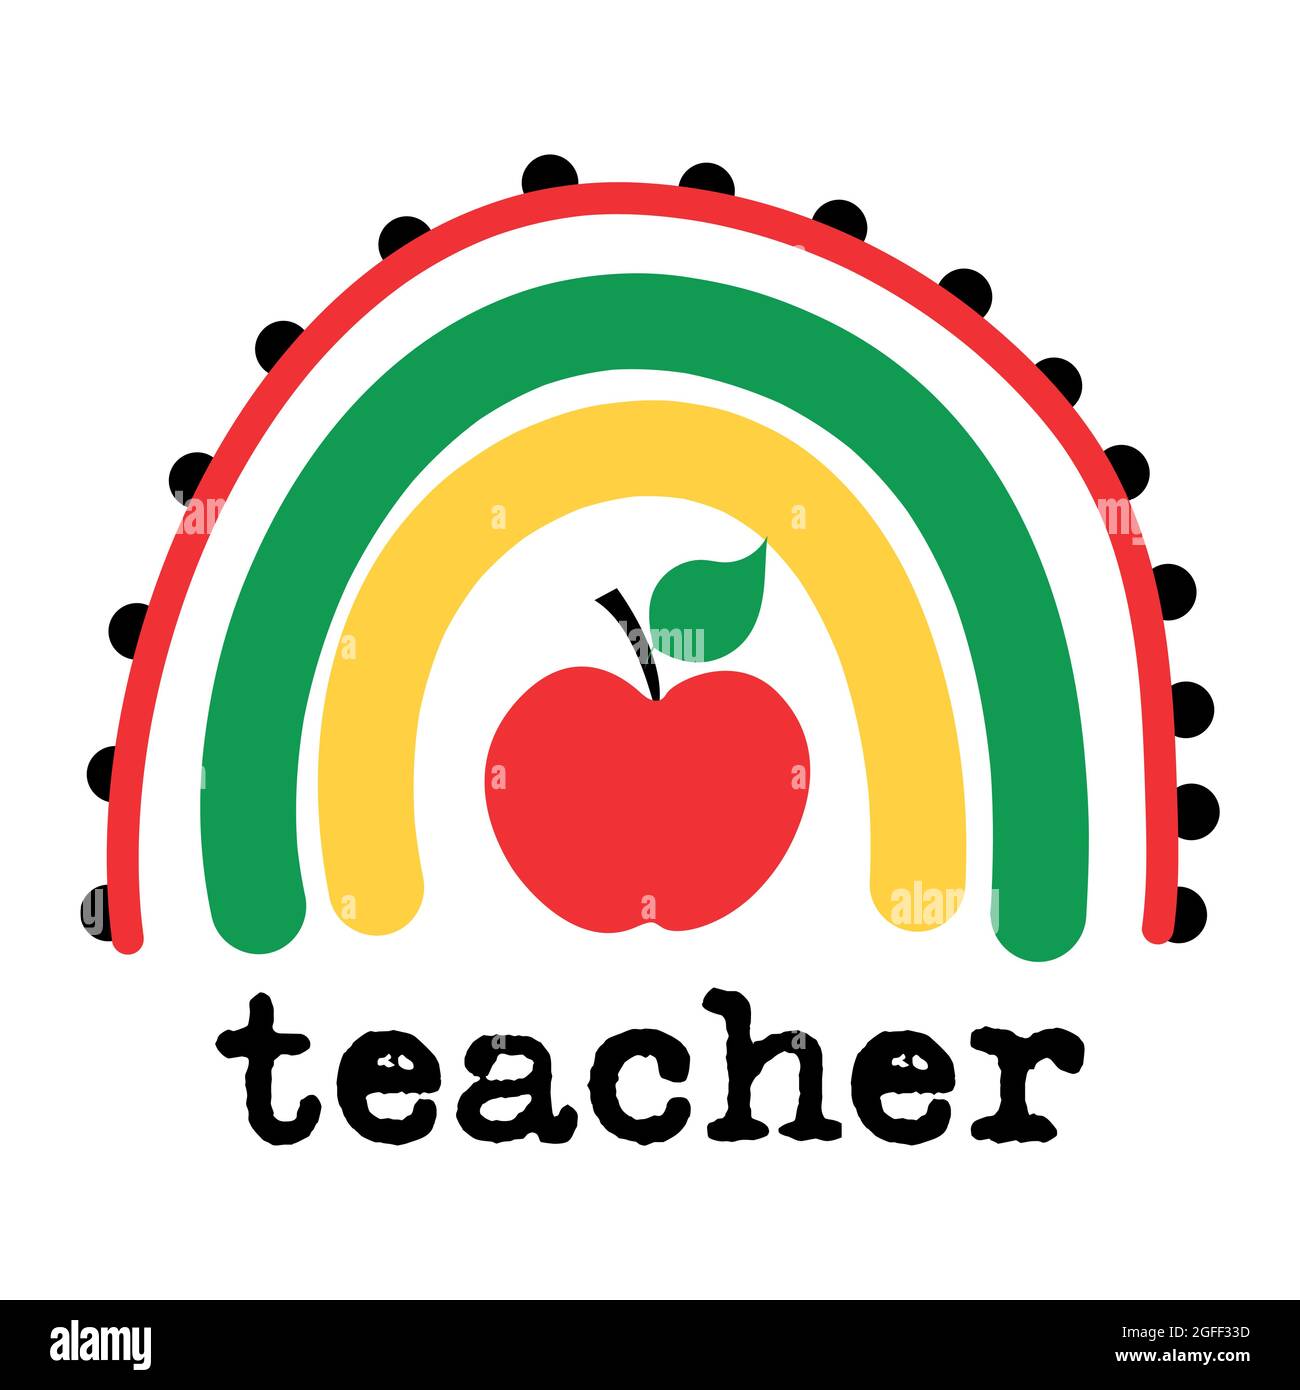 La manzana del maestro - Al usar diferentes plumones de colores